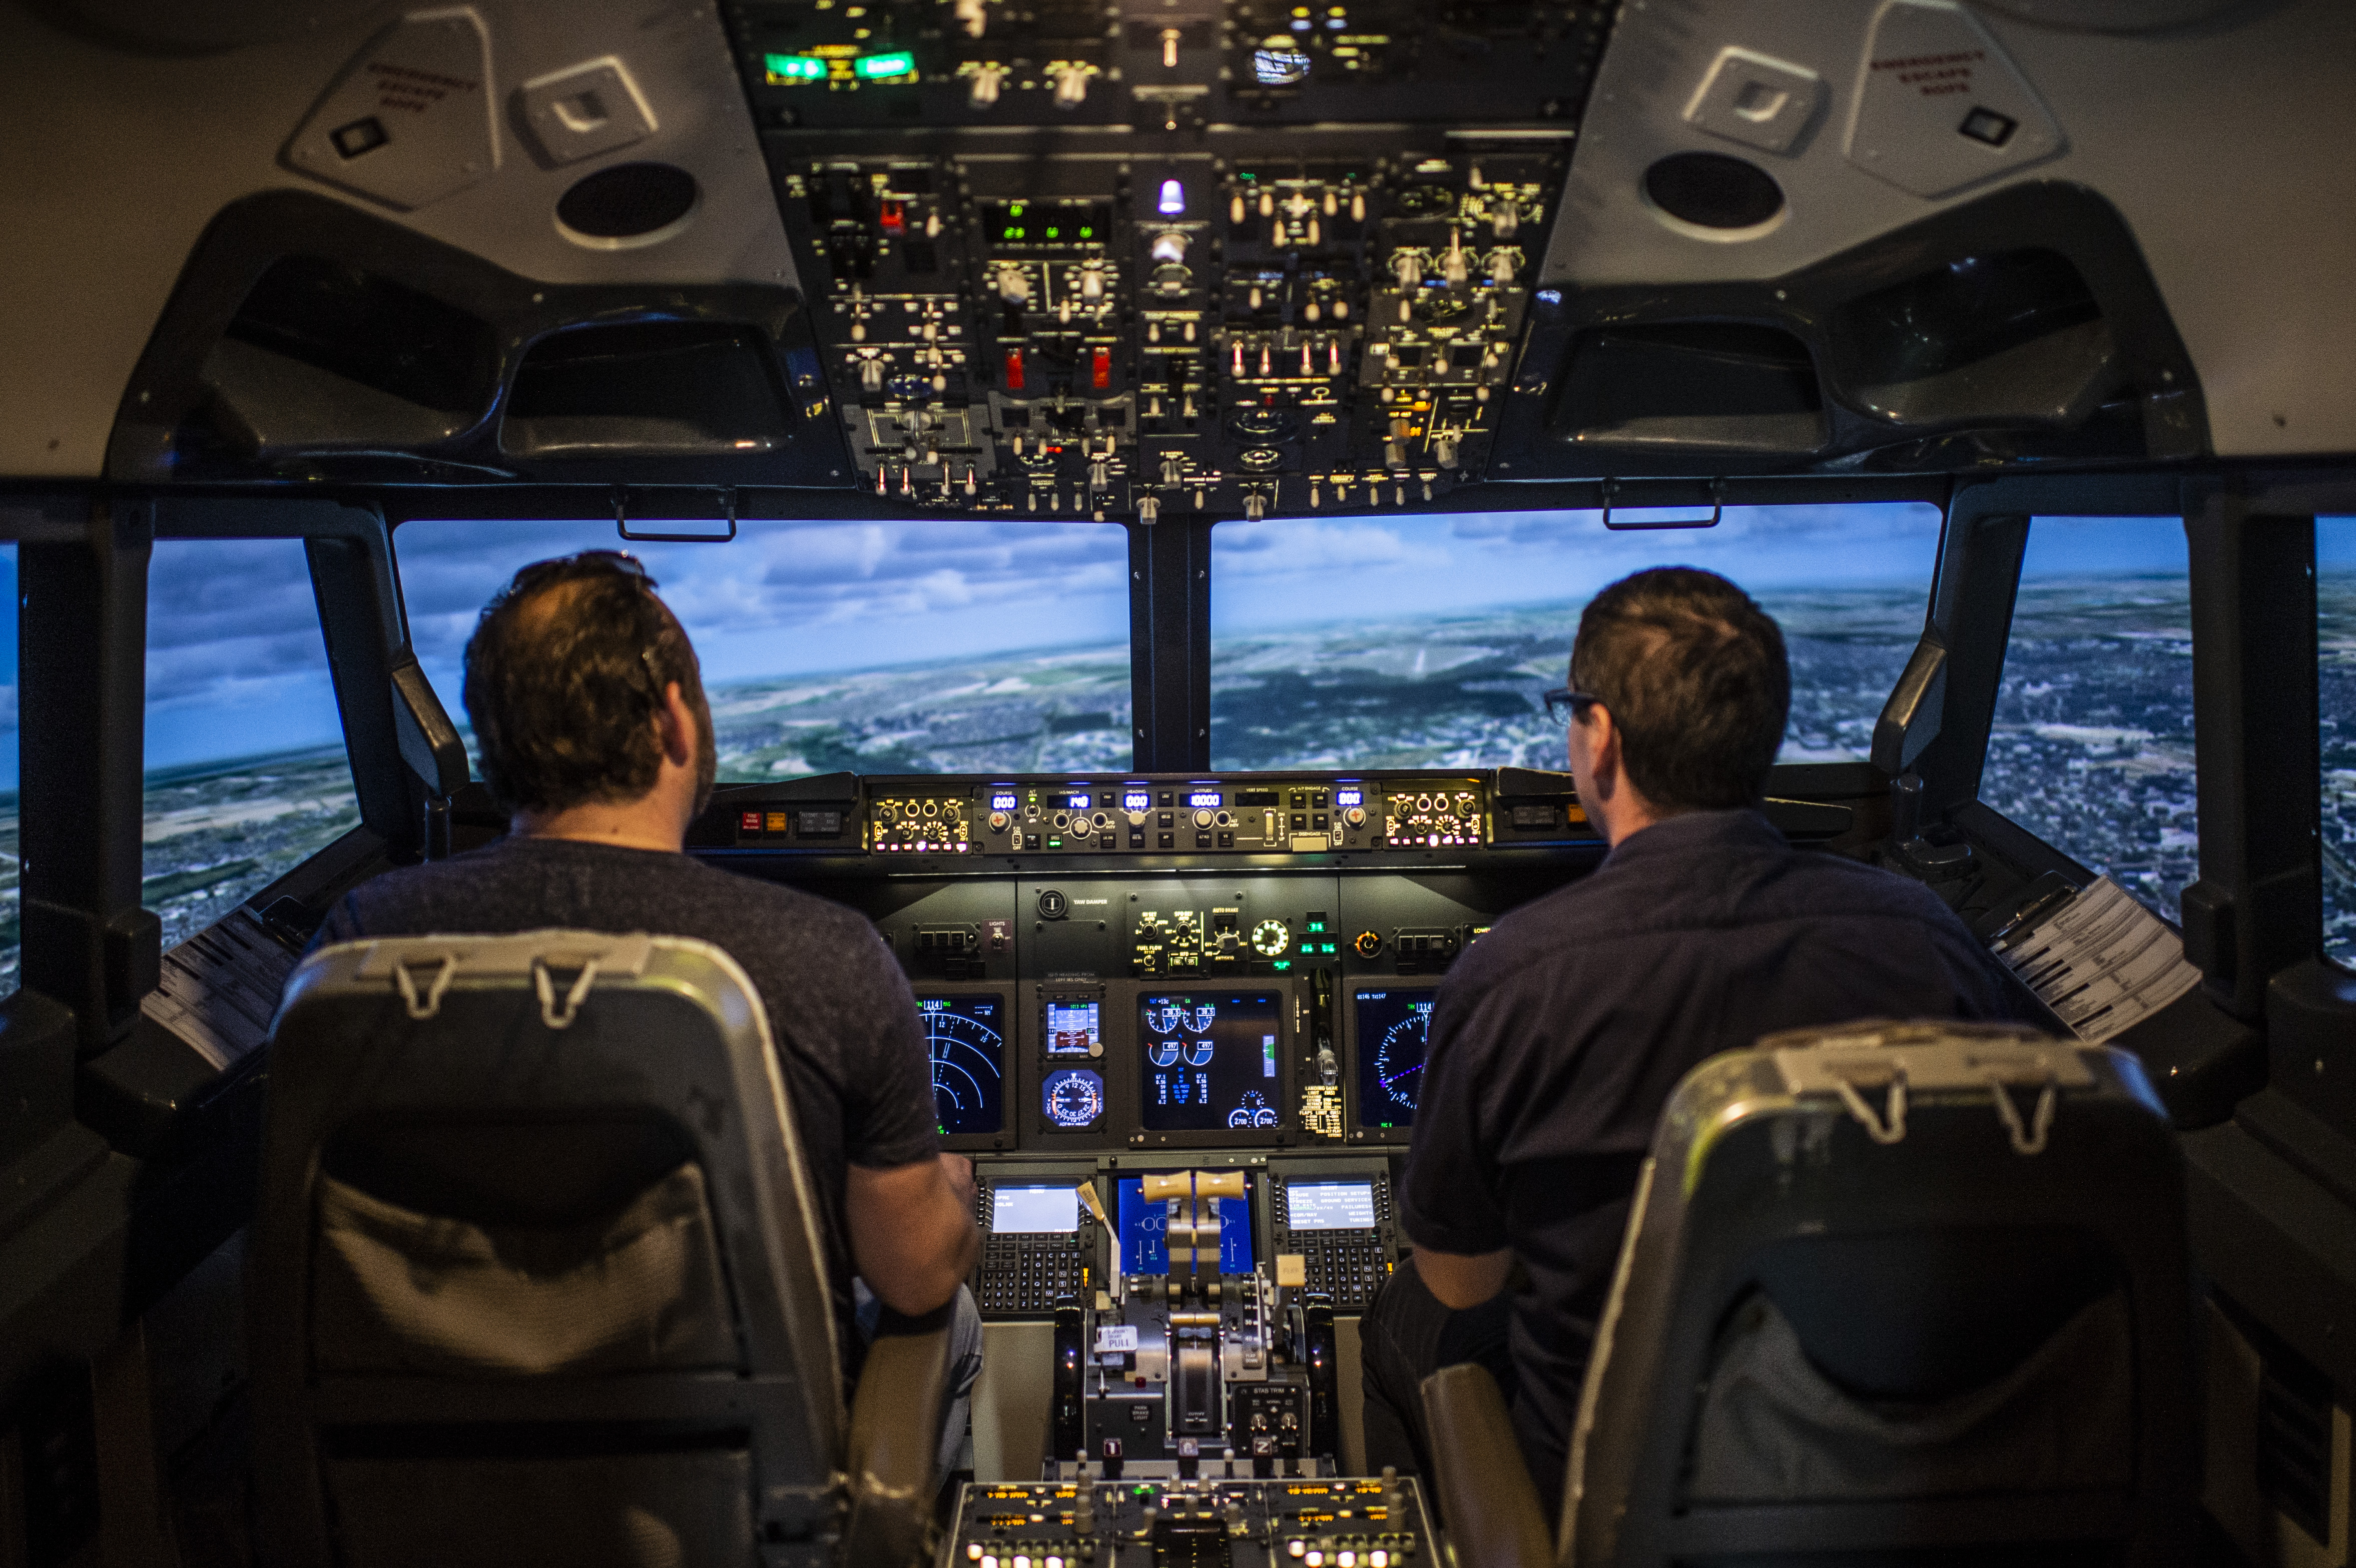 Körberepültük Budapestet – A Pilots repülőgép-szimulátorral te lehetsz a pilóta!